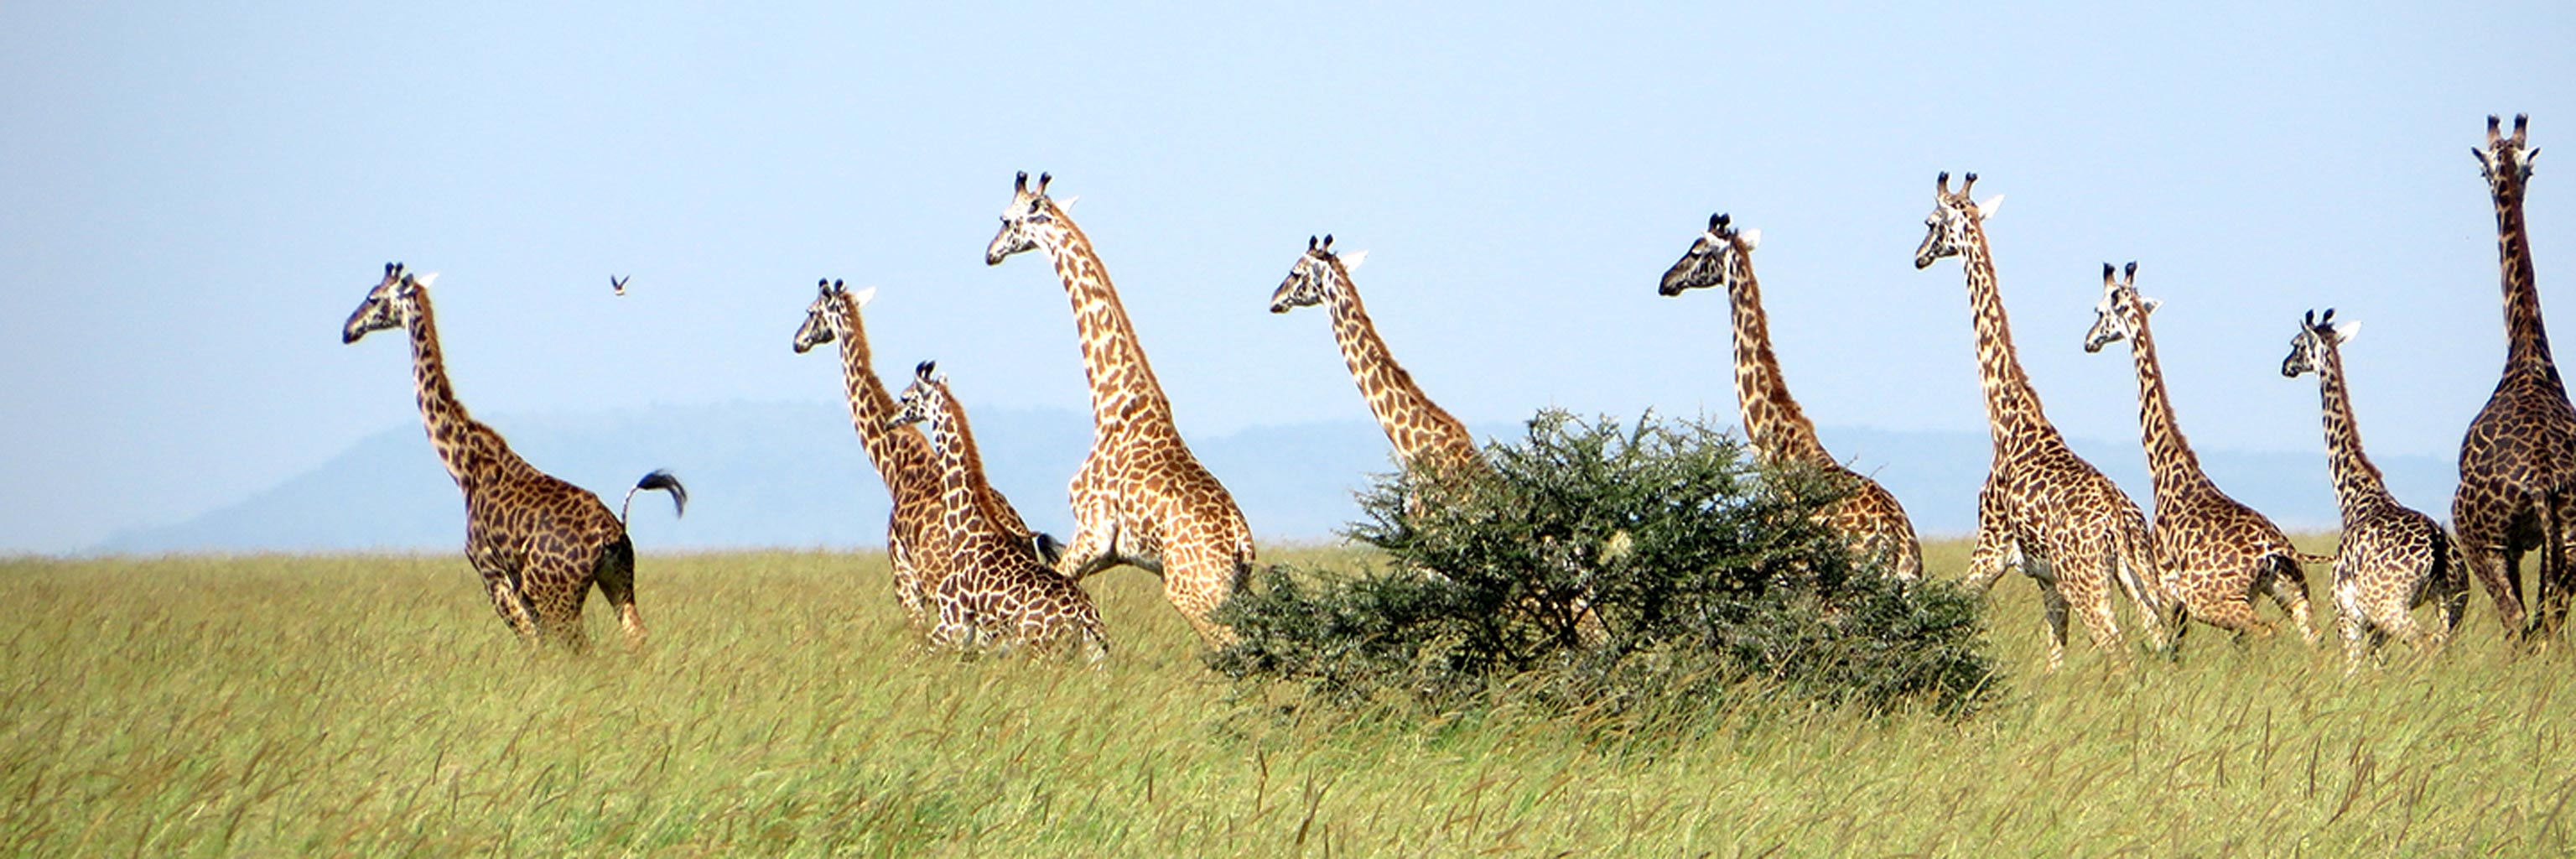 Pack of giraffes running 